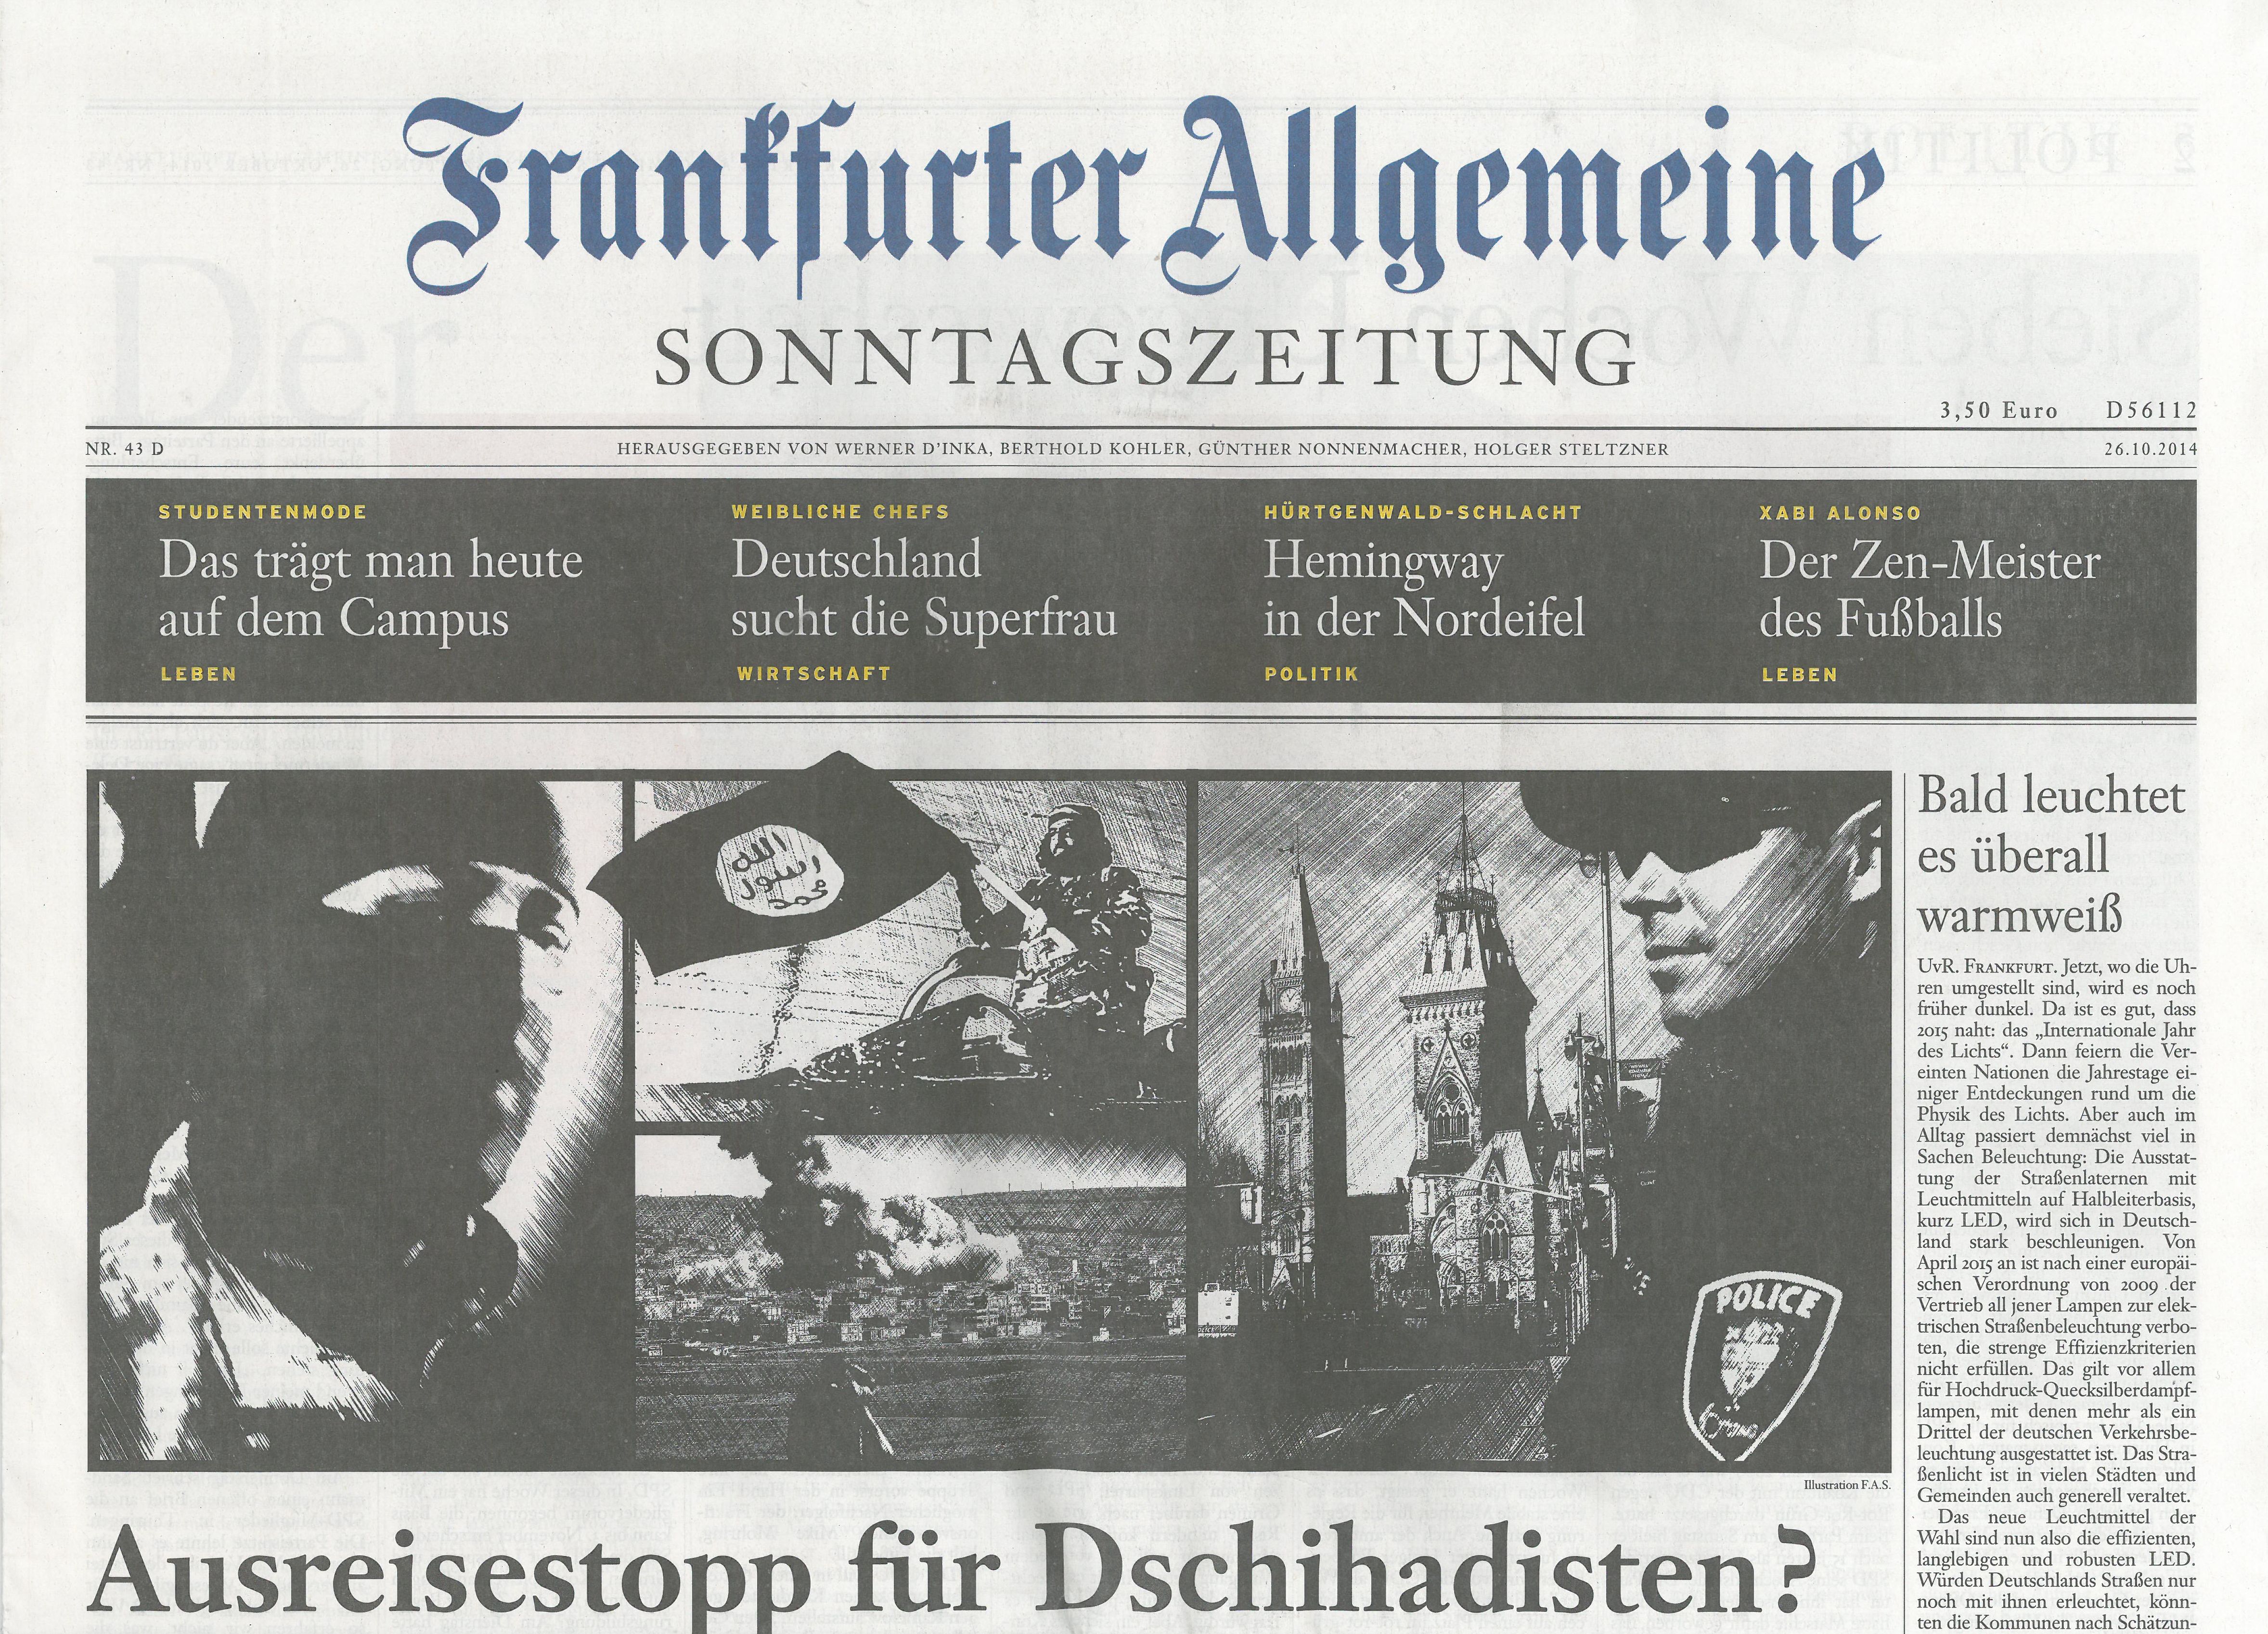 Frankfurter Allgemeine 2014 OCTOBER 26 COVER